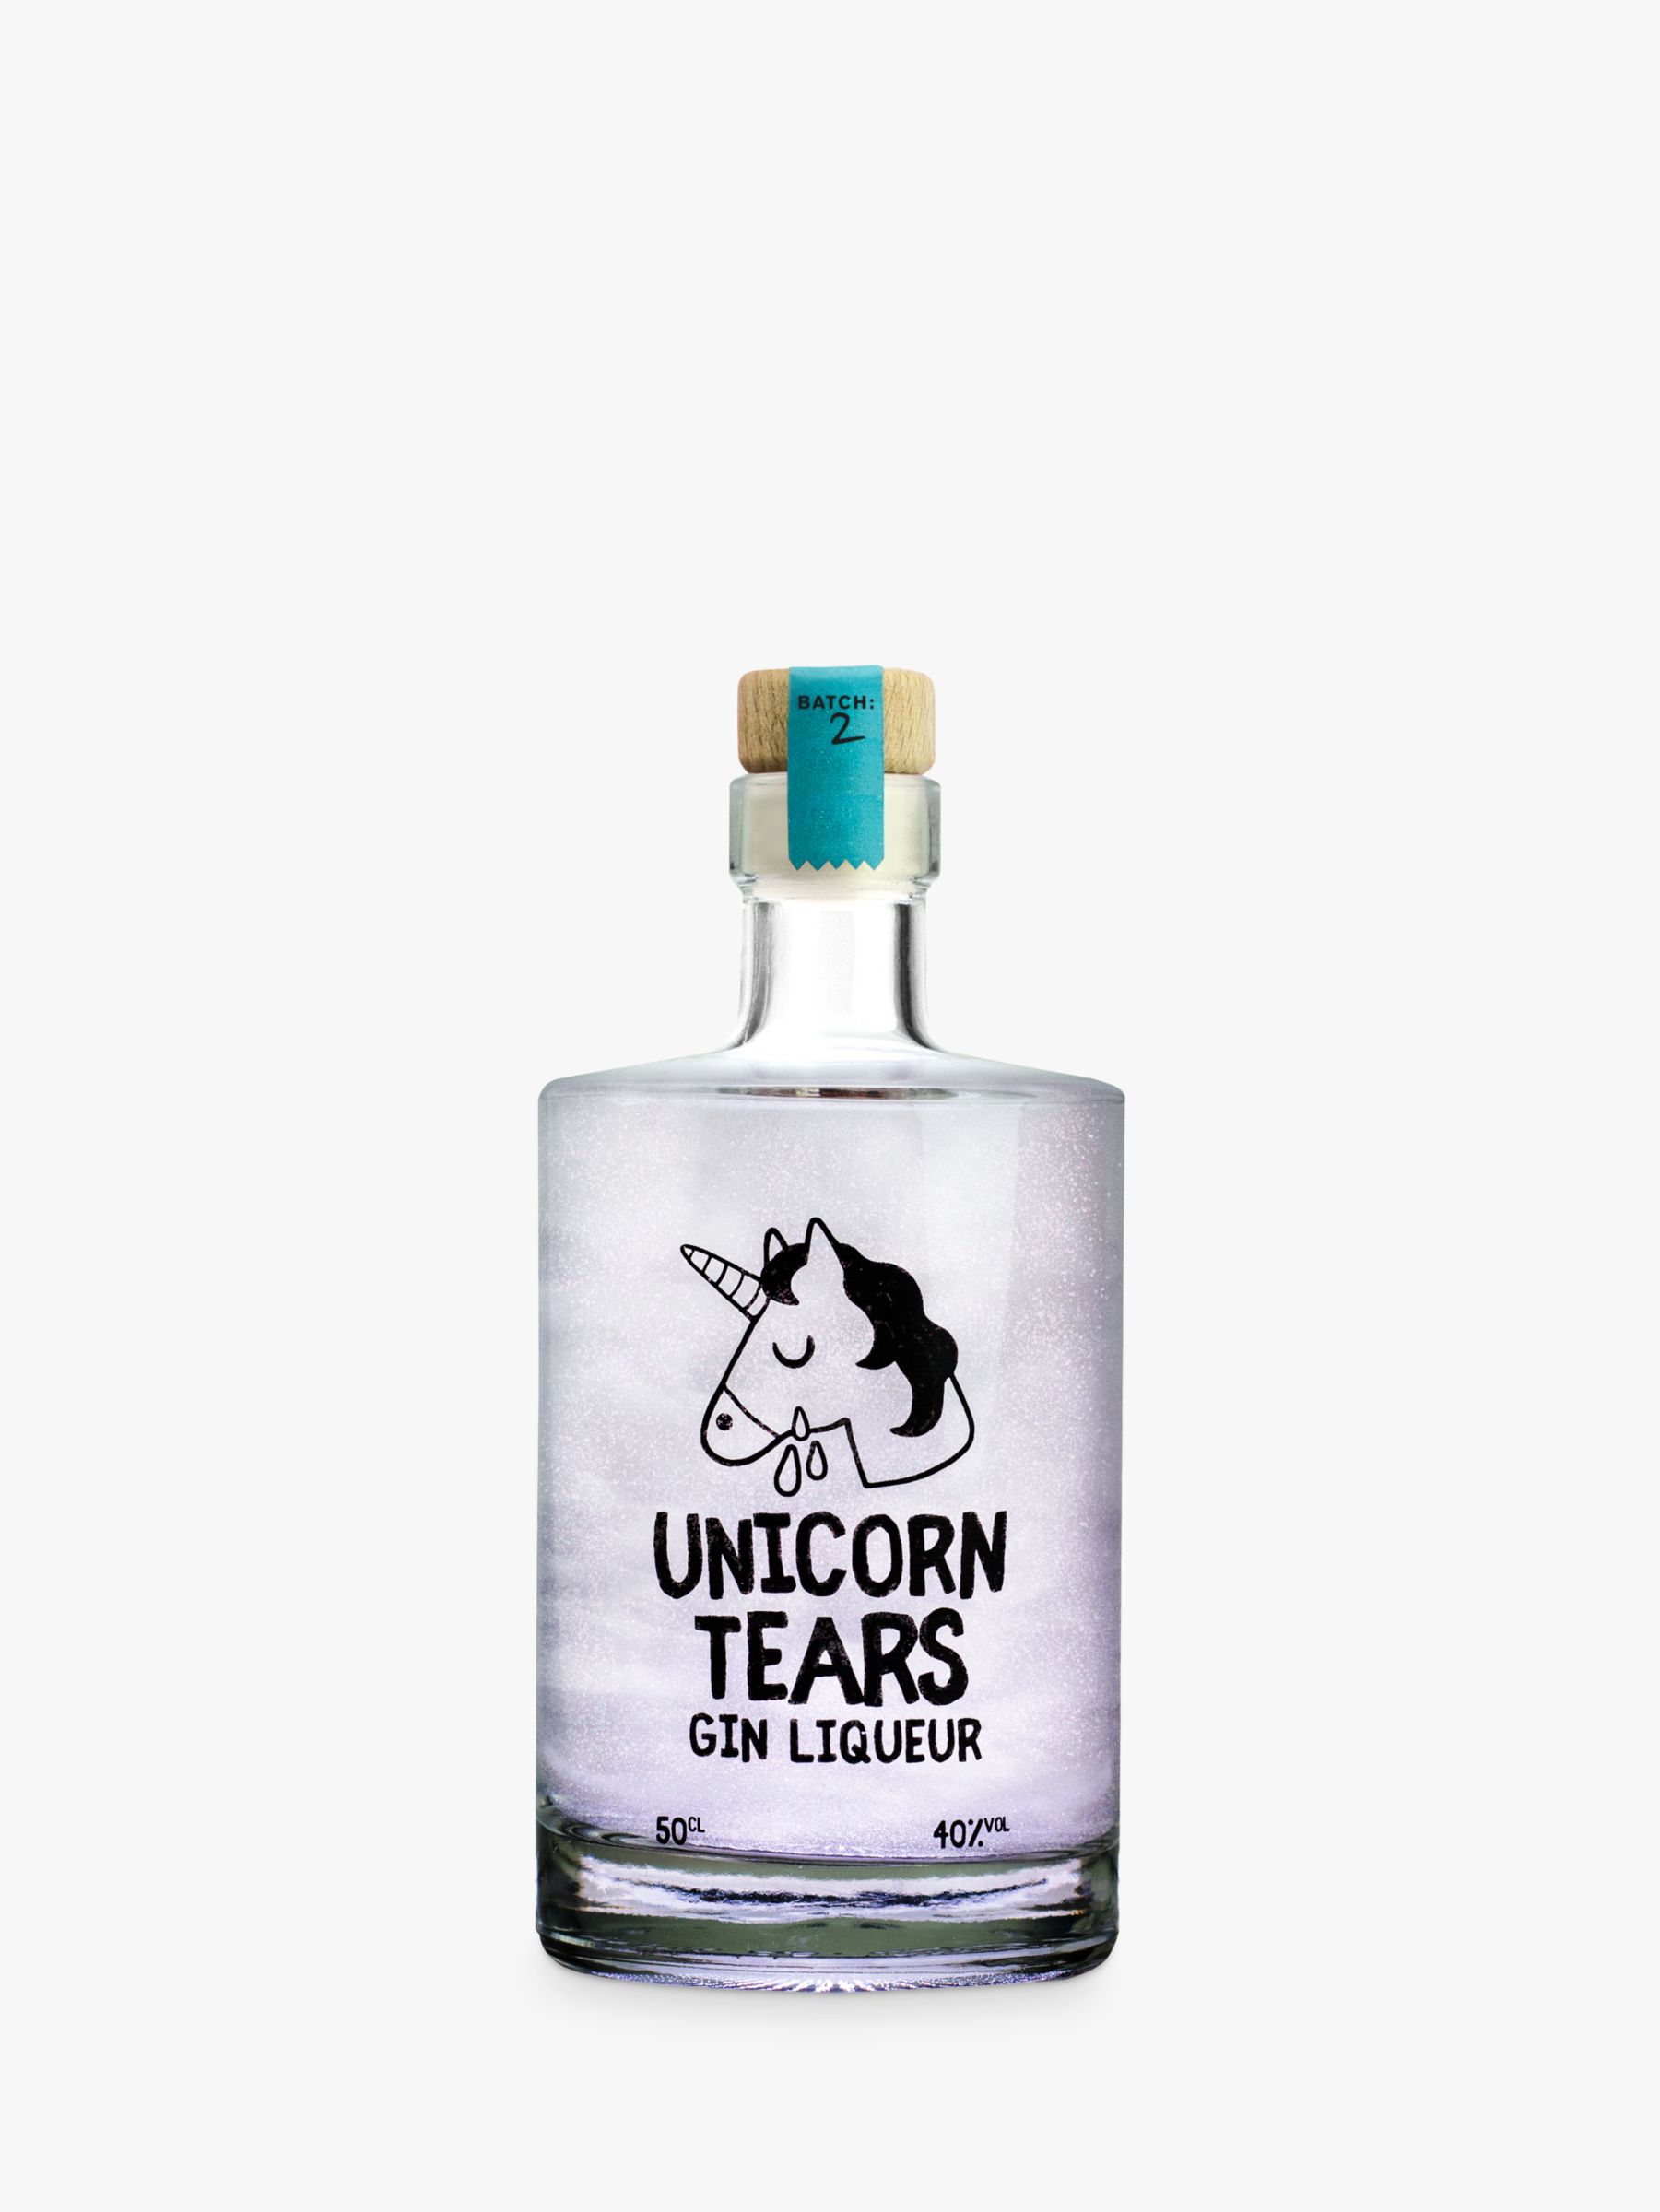 Firebox Unicorn Tears Gin Liqueur, 50cl.